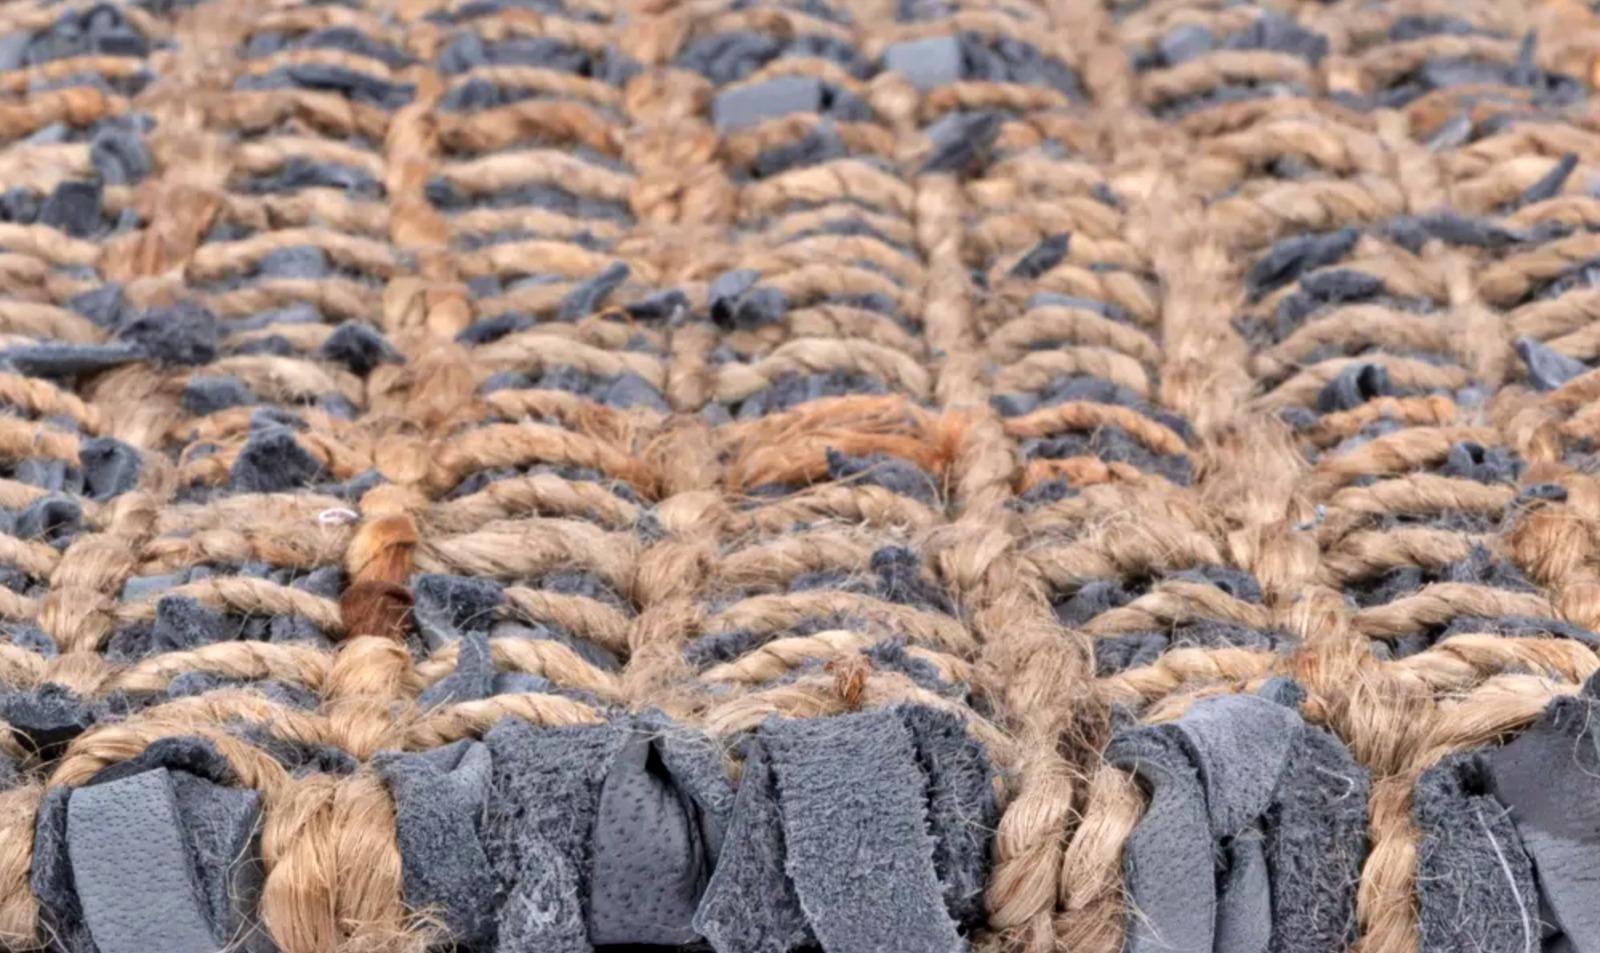 Amazing Blue Leather rug NEW
200cm x 300cm
Composition :
80% cuir
20 % de fibres textiles végétales
Couleur : bleu et brun.